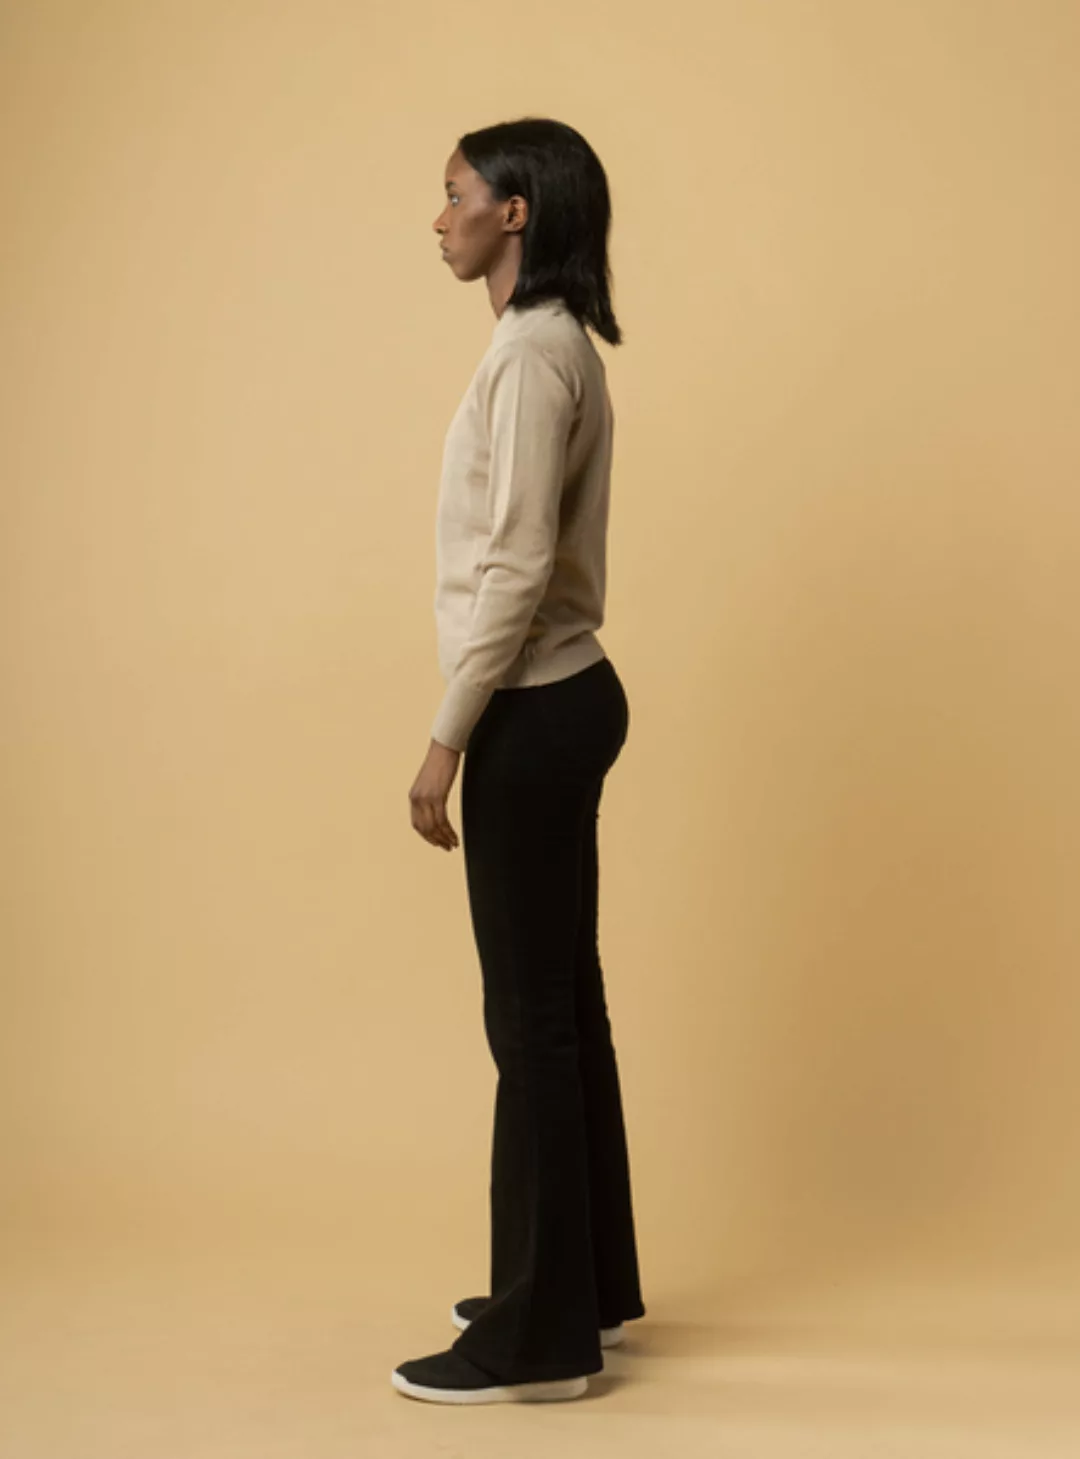 Damen Feinstrick-pullover Sada Aus Bio-baumwolle - Gots Zertifiziert günstig online kaufen